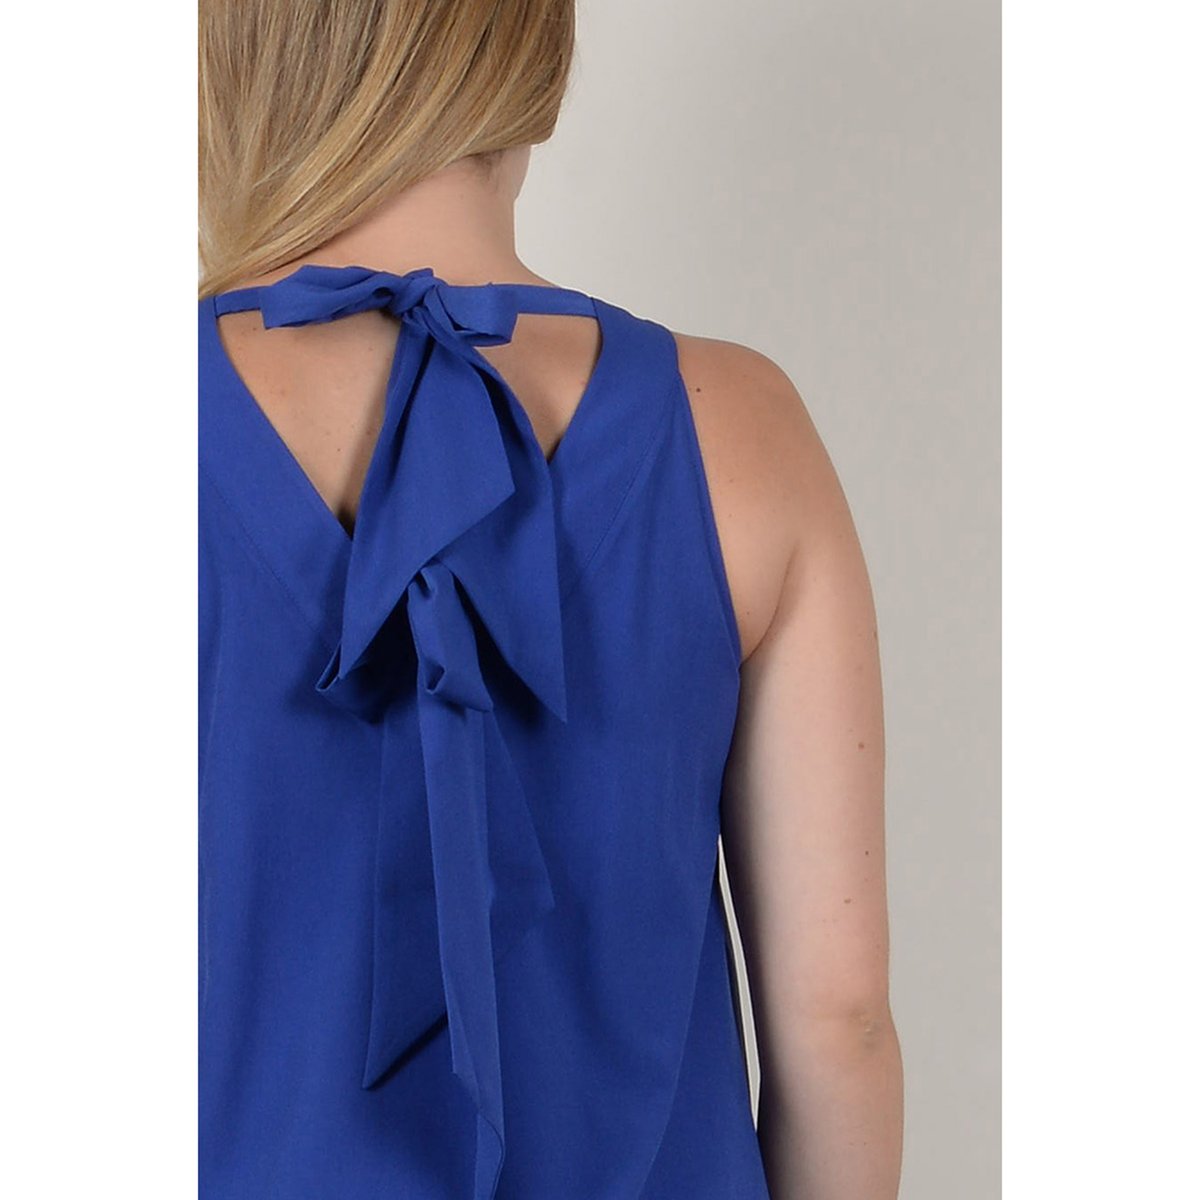 Платье La Redoute Расклешенное короткое с длинными рукавами 46 (FR) - 52 (RUS) синий, размер 46 (FR) - 52 (RUS) Расклешенное короткое с длинными рукавами 46 (FR) - 52 (RUS) синий - фото 3